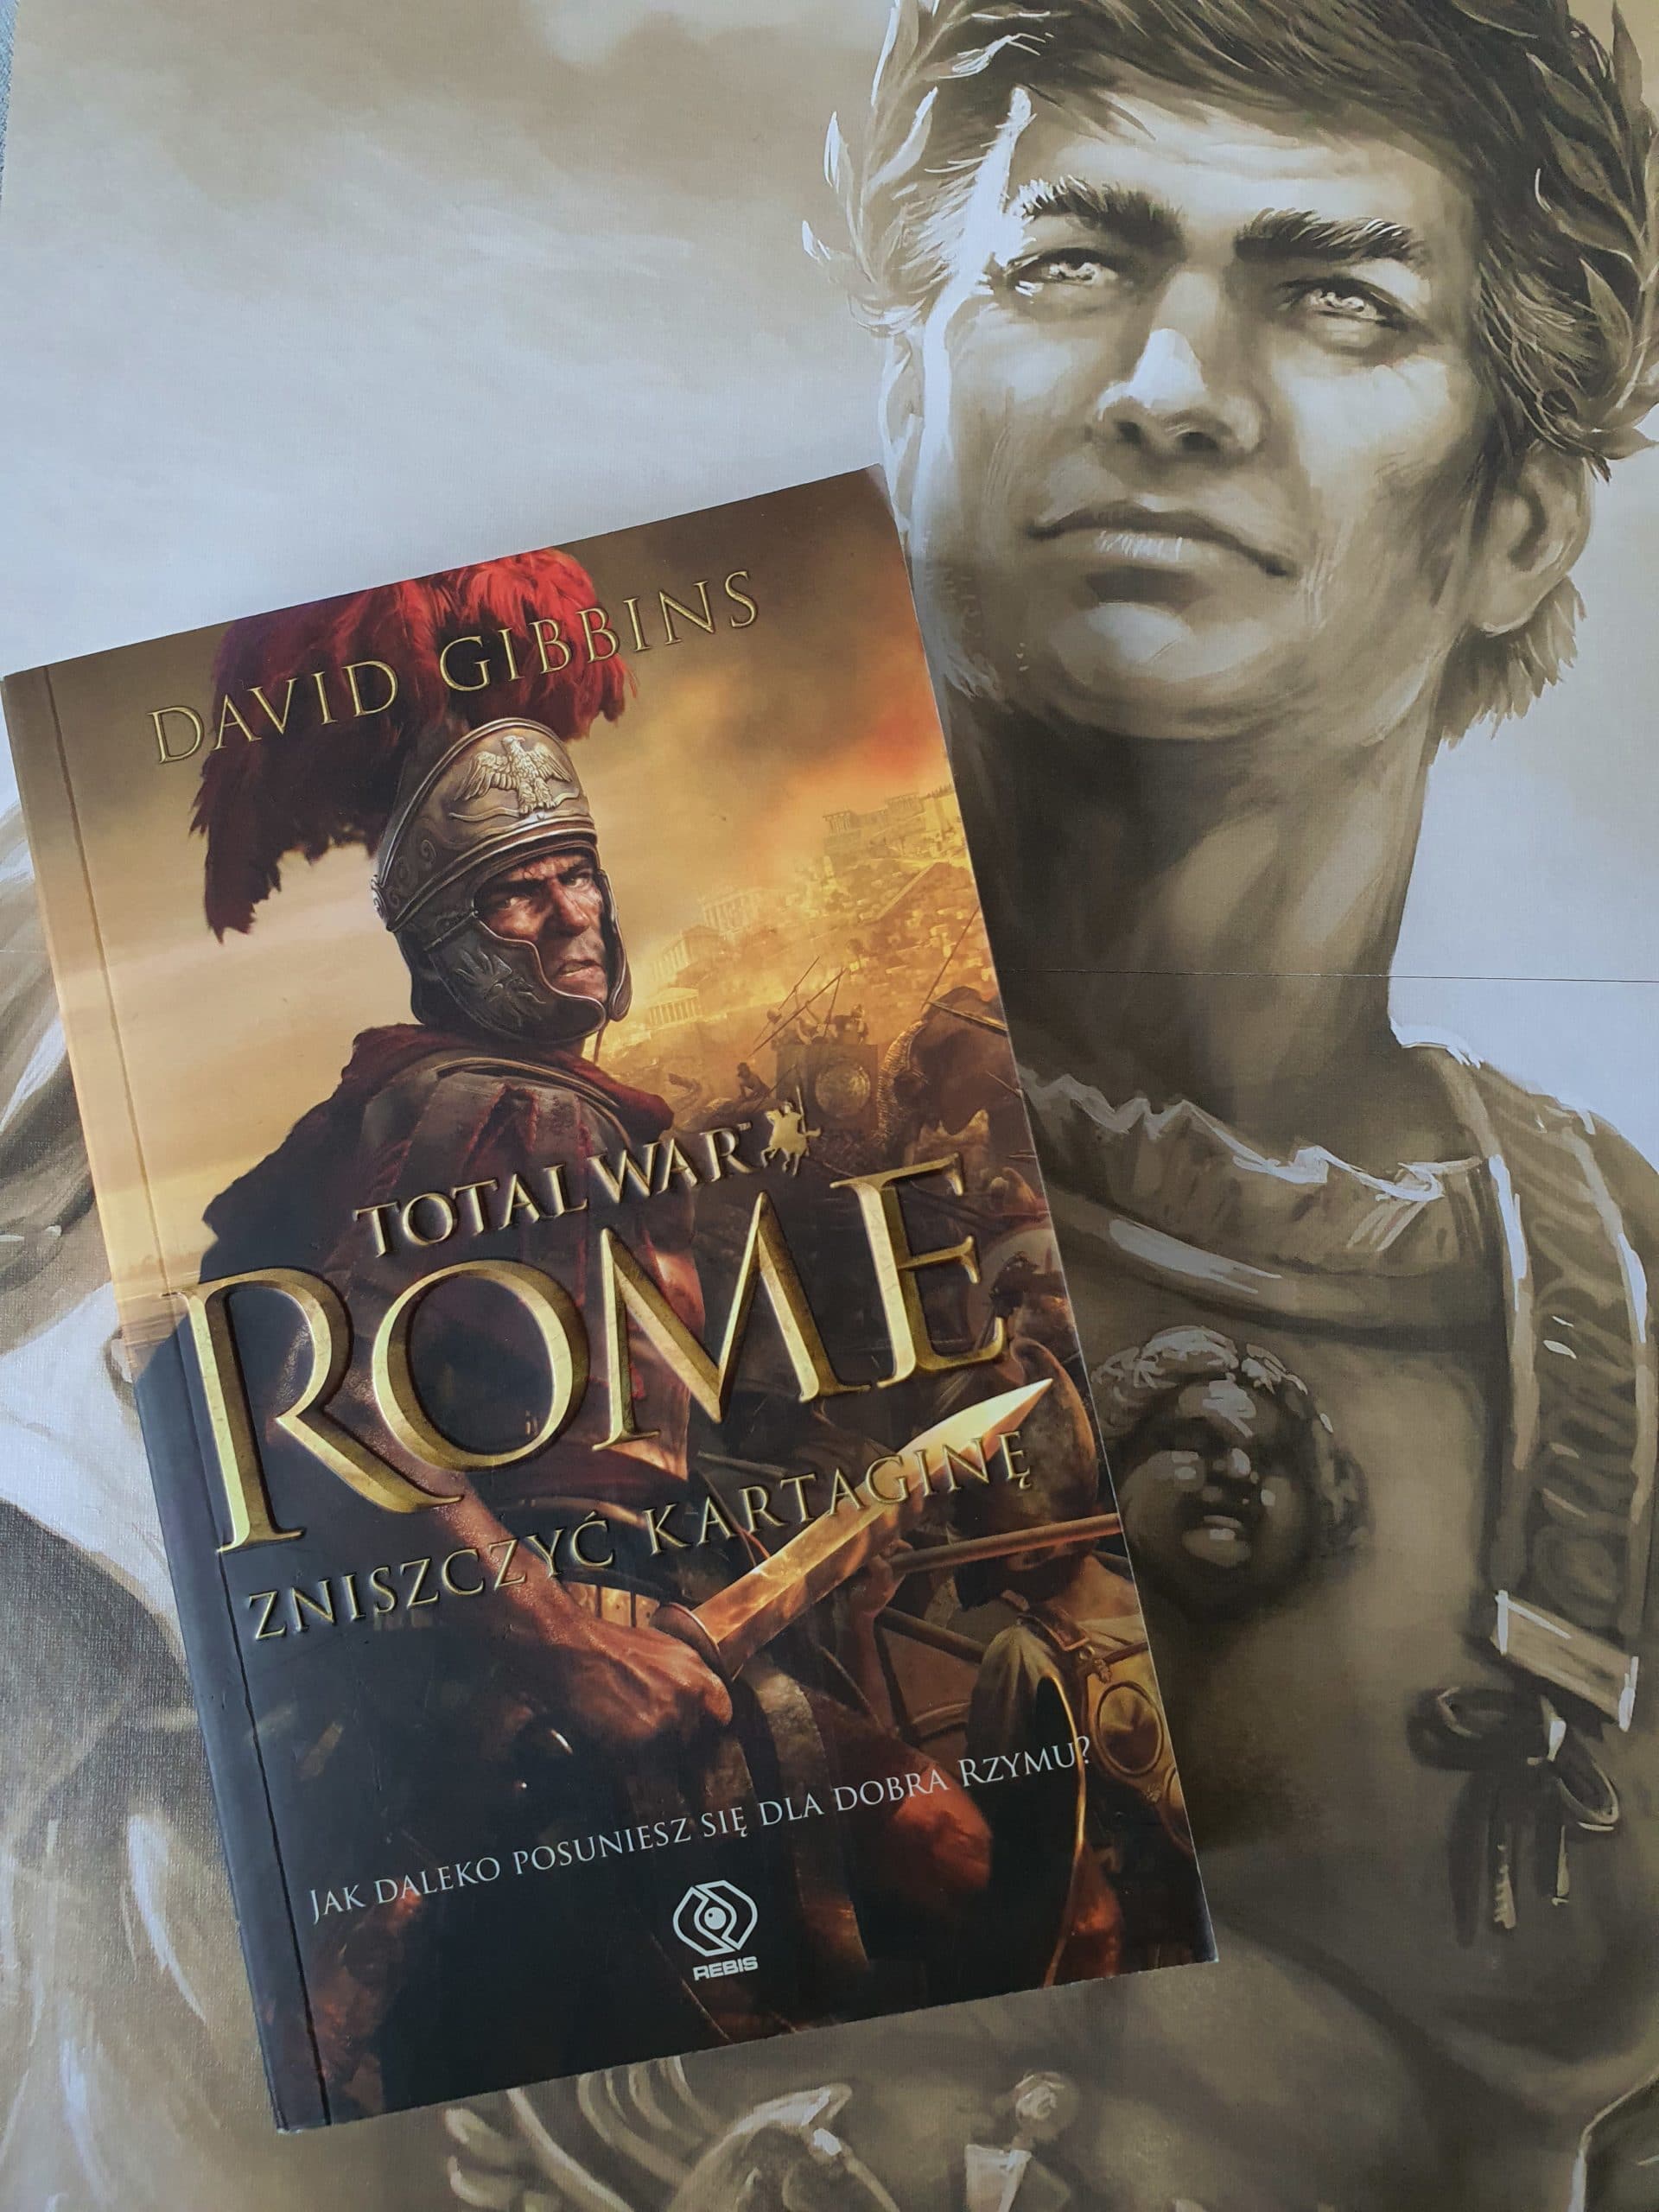 Total War Rome: Zniszczyć Kartaginę